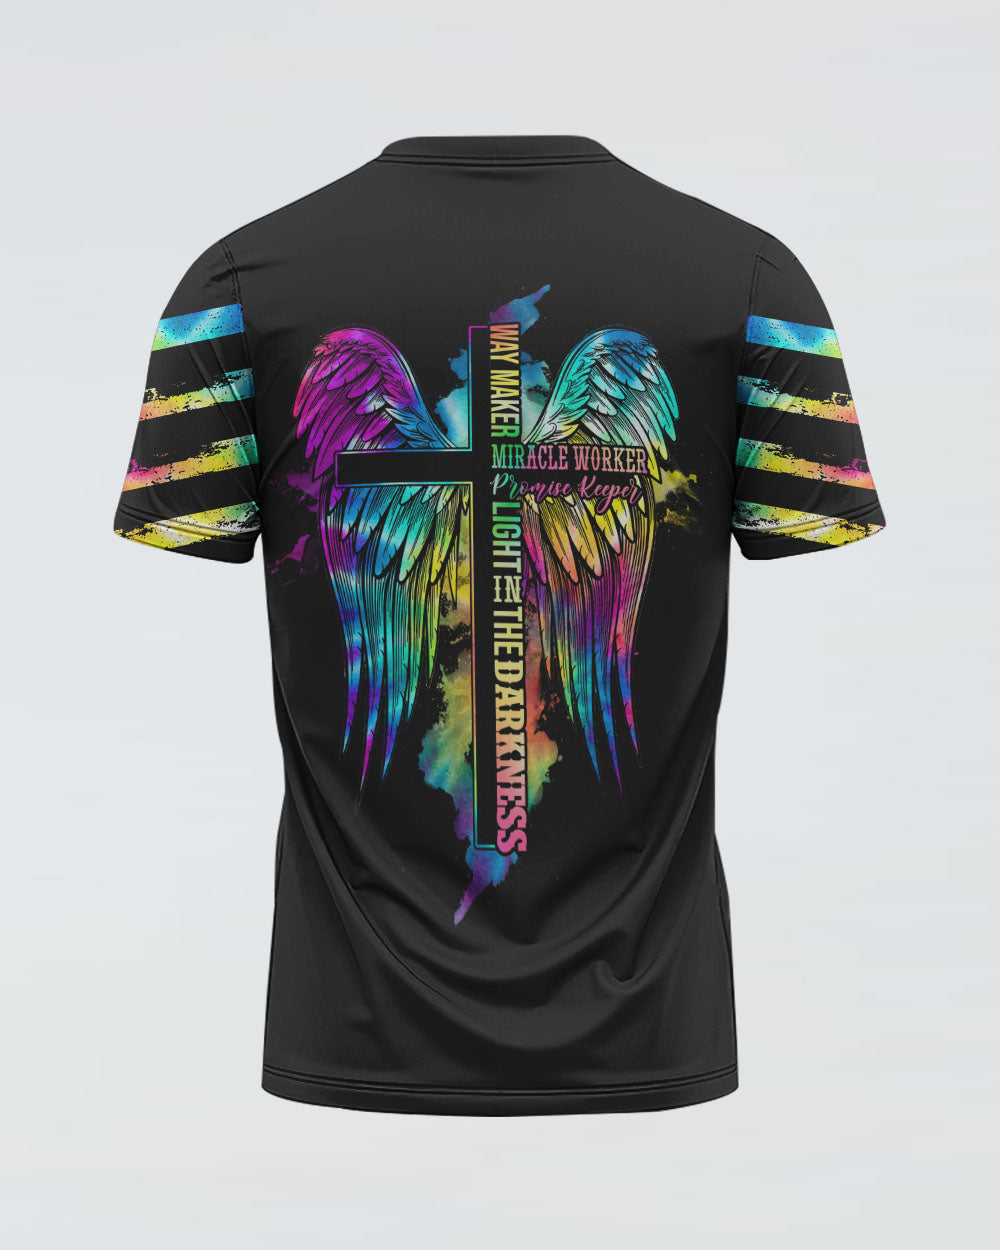 Way Maker Miracle Worker Cross Wings Tie Dye Women's Christian Tshirt